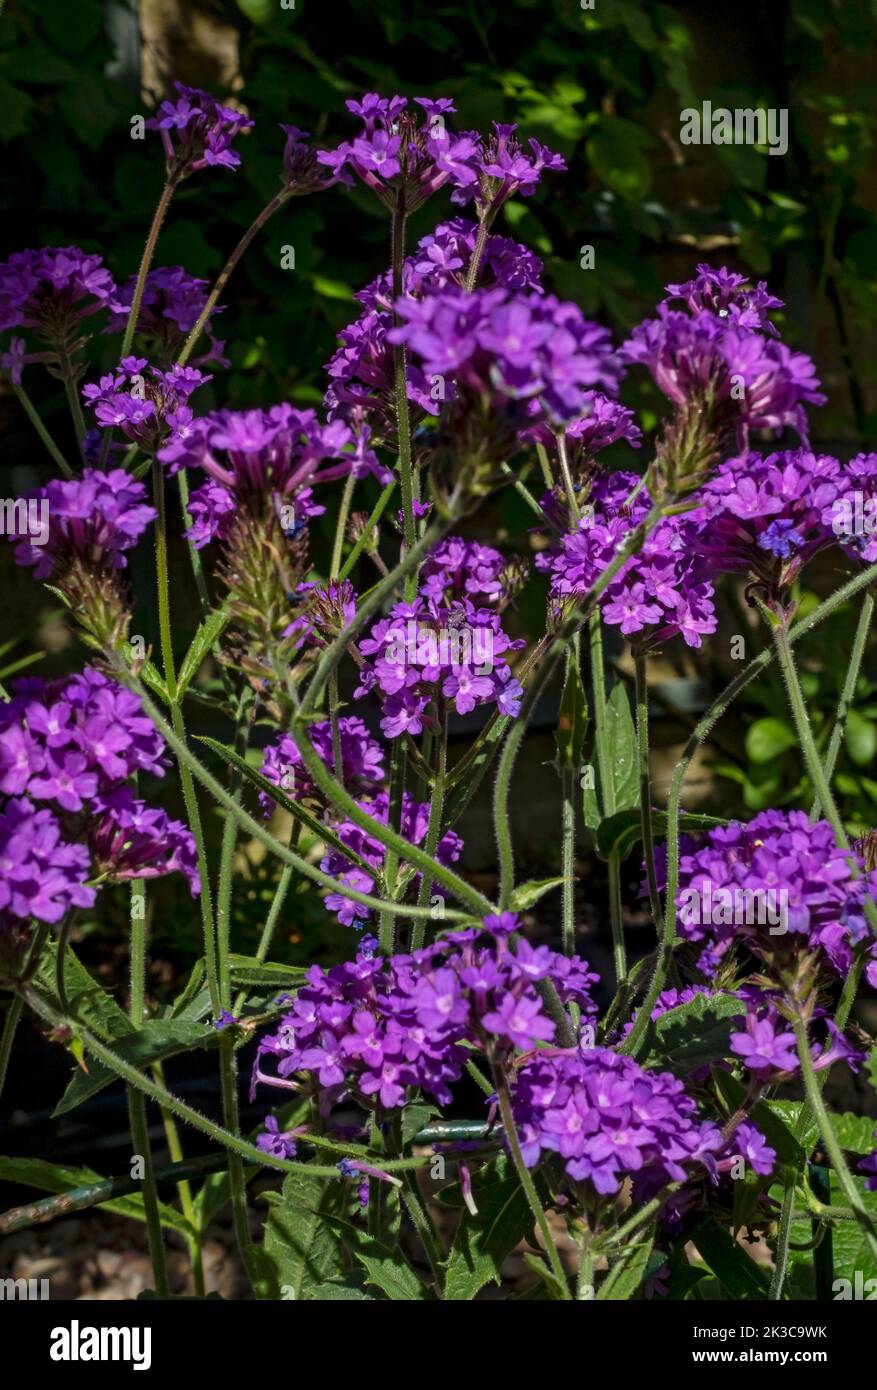 Nahaufnahme der violetten Verbena rigida venosa Eisenkraut Blüten verbenaceae Blume blühen im Sommer England Vereinigtes Königreich Großbritannien Stockfoto